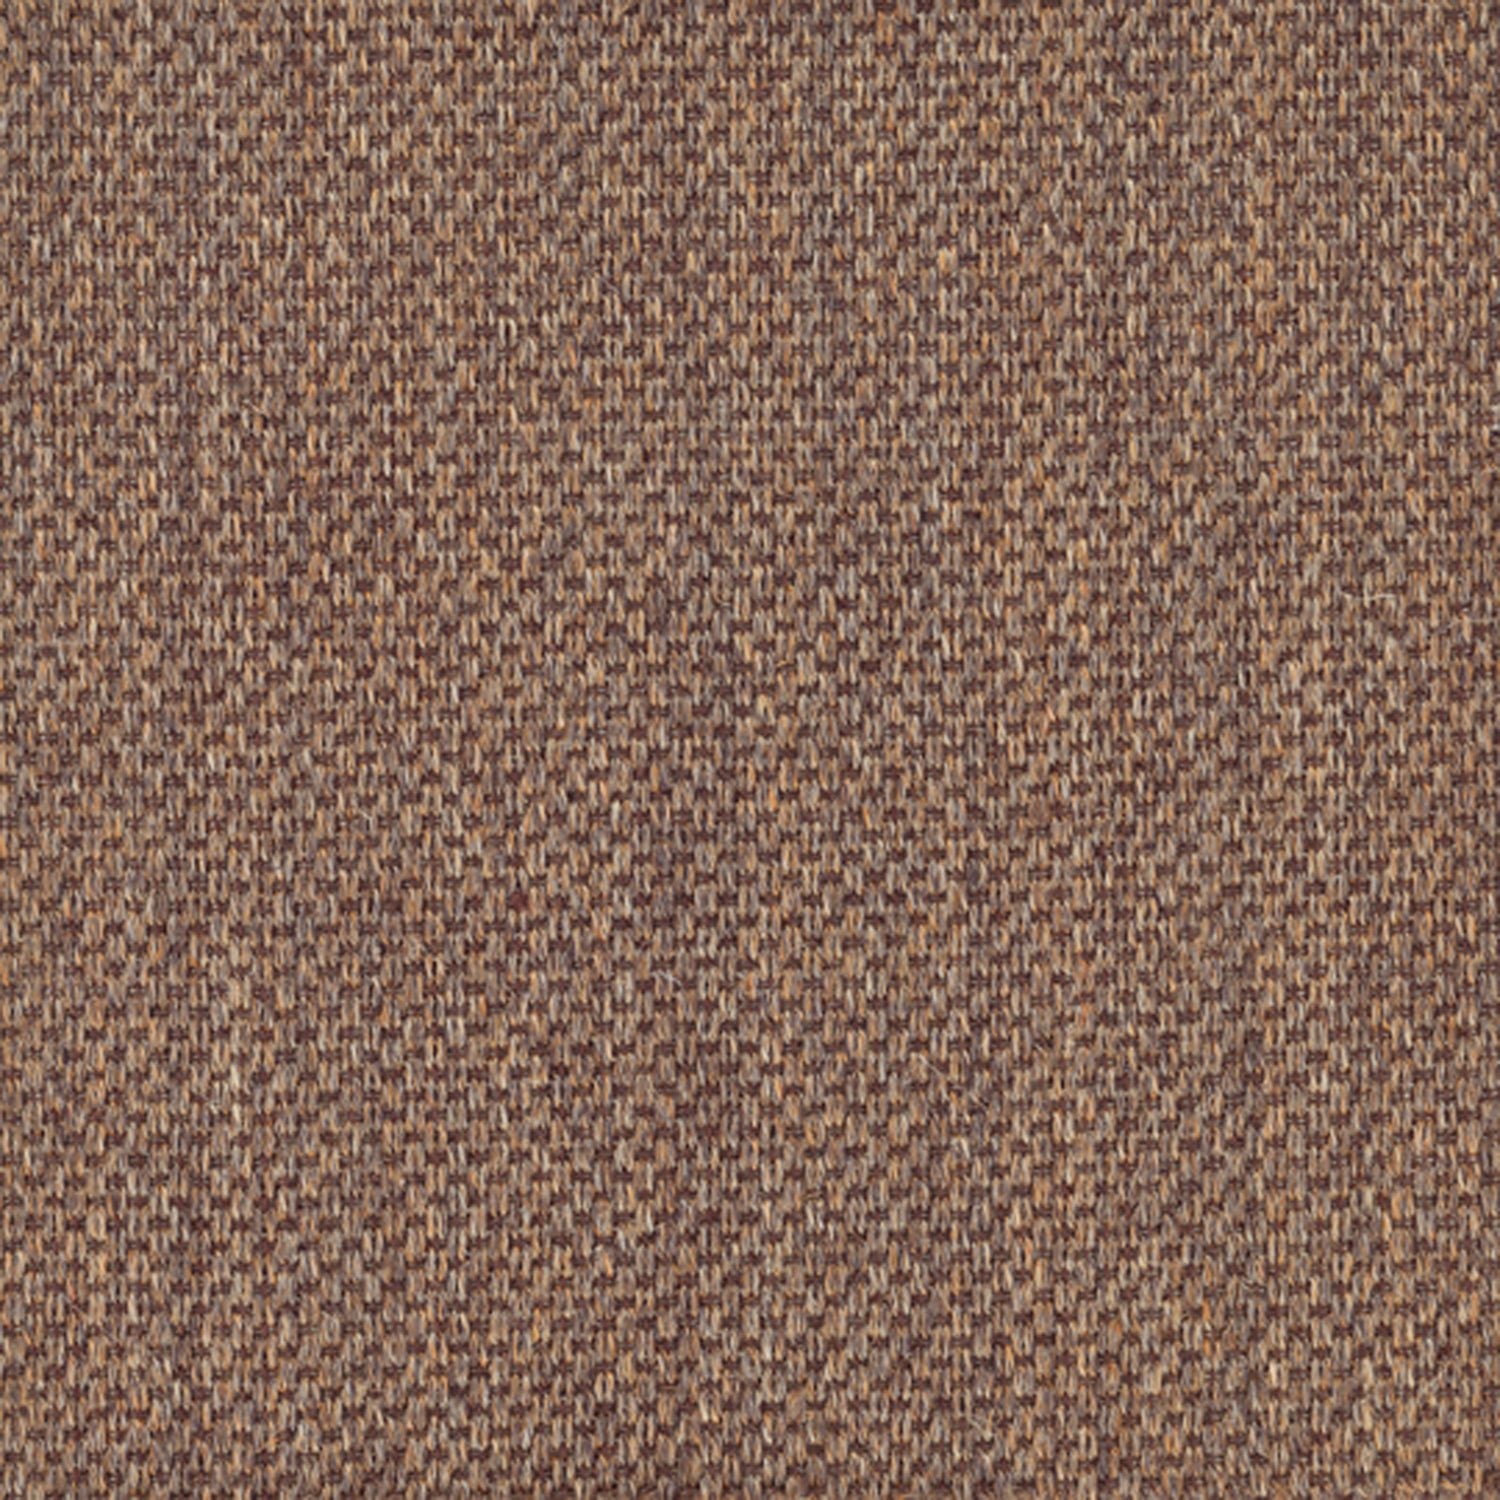 Sisal broadloom carpet swatch in a flat grid weave in "Enduring" sable.